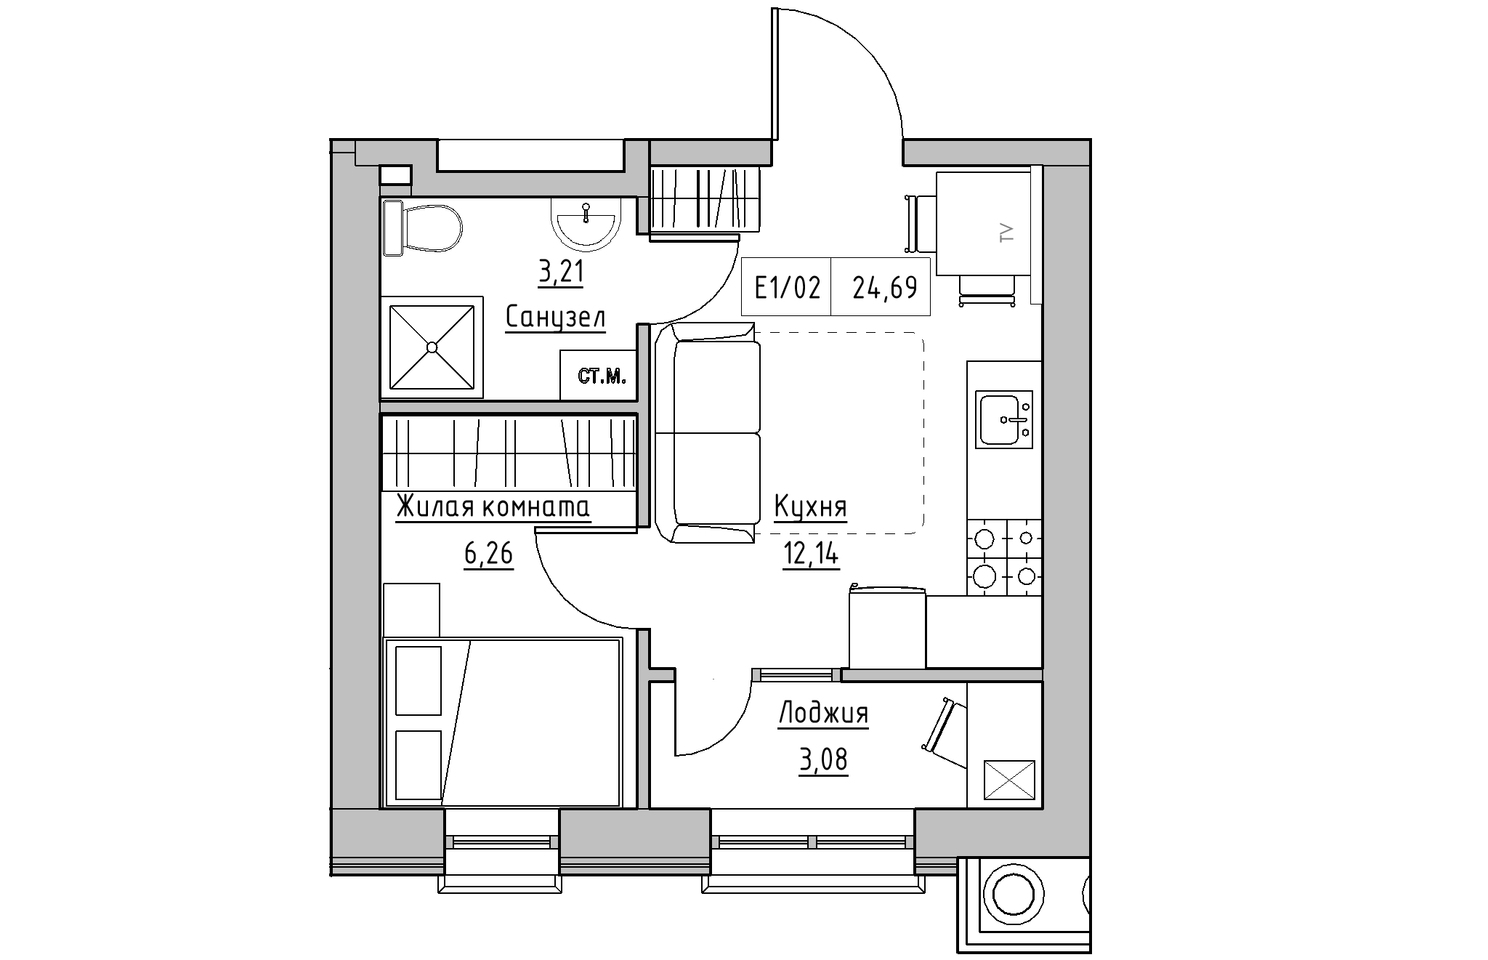 Планування 1-к квартира площею 24.69м2, KS-010-04/0002.